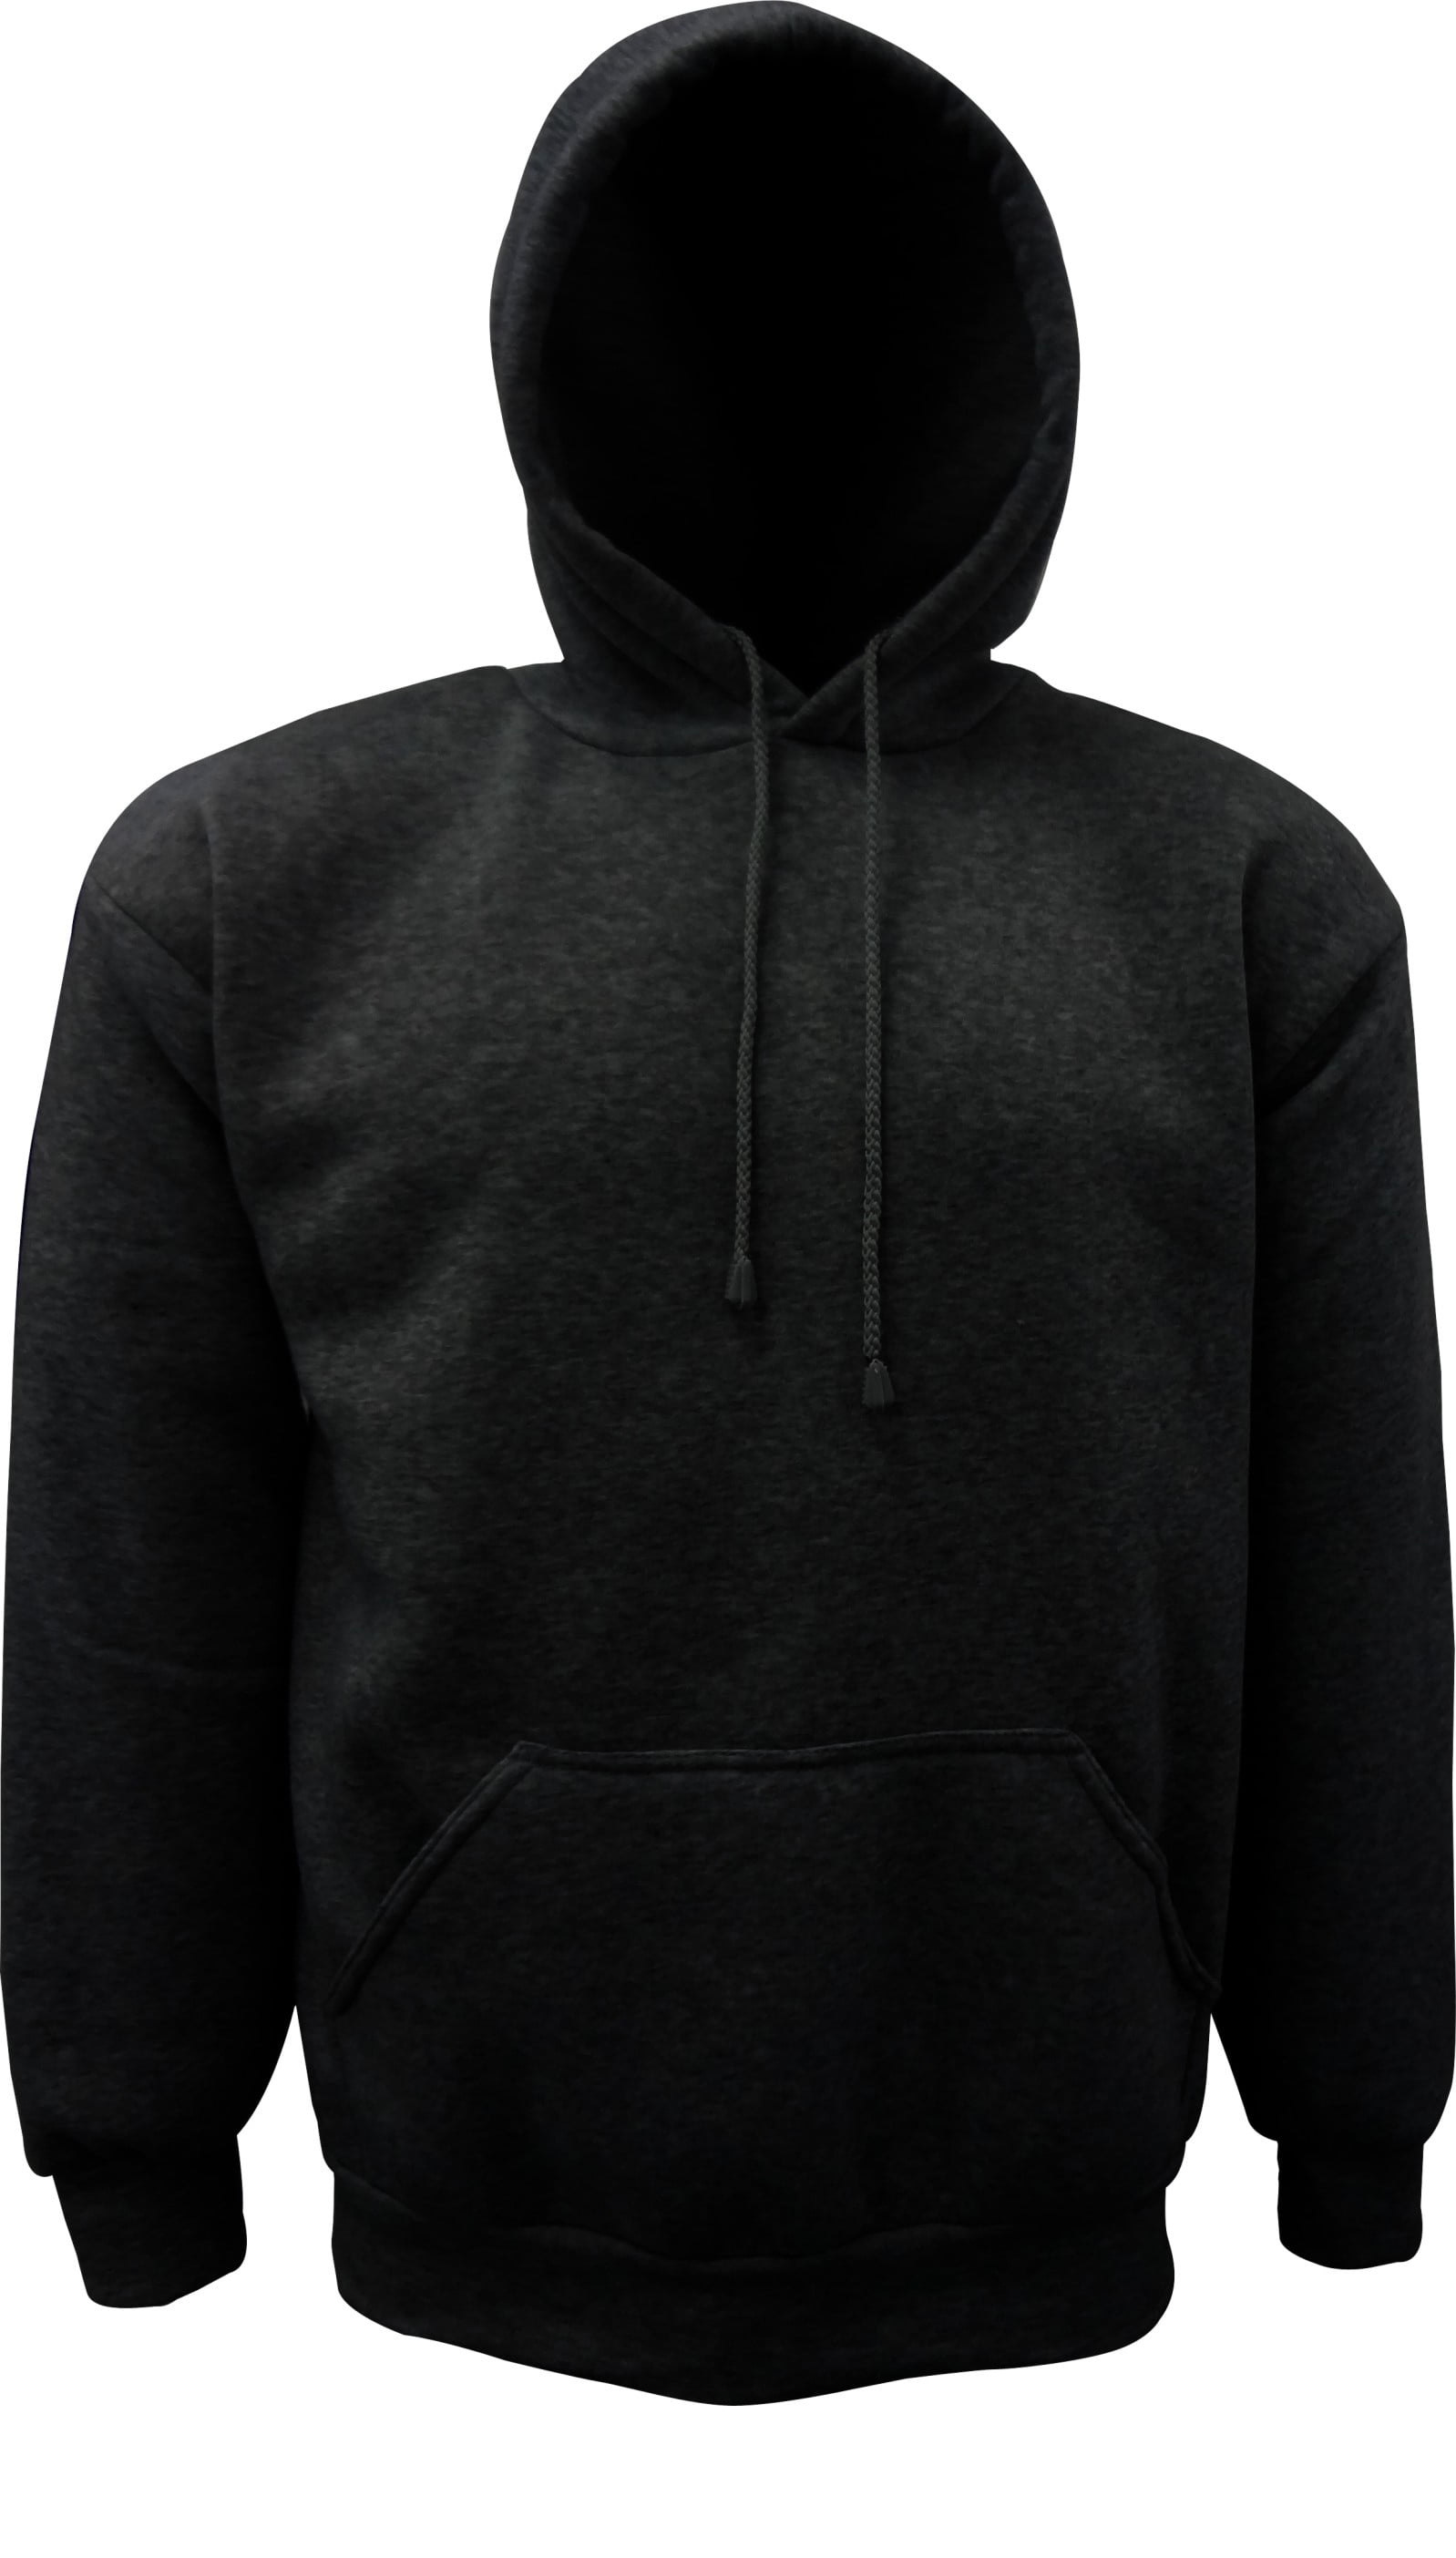 Men's Designer FIt Casual Sweatshirt Hoody Top Jacket Coat Hoodies ...